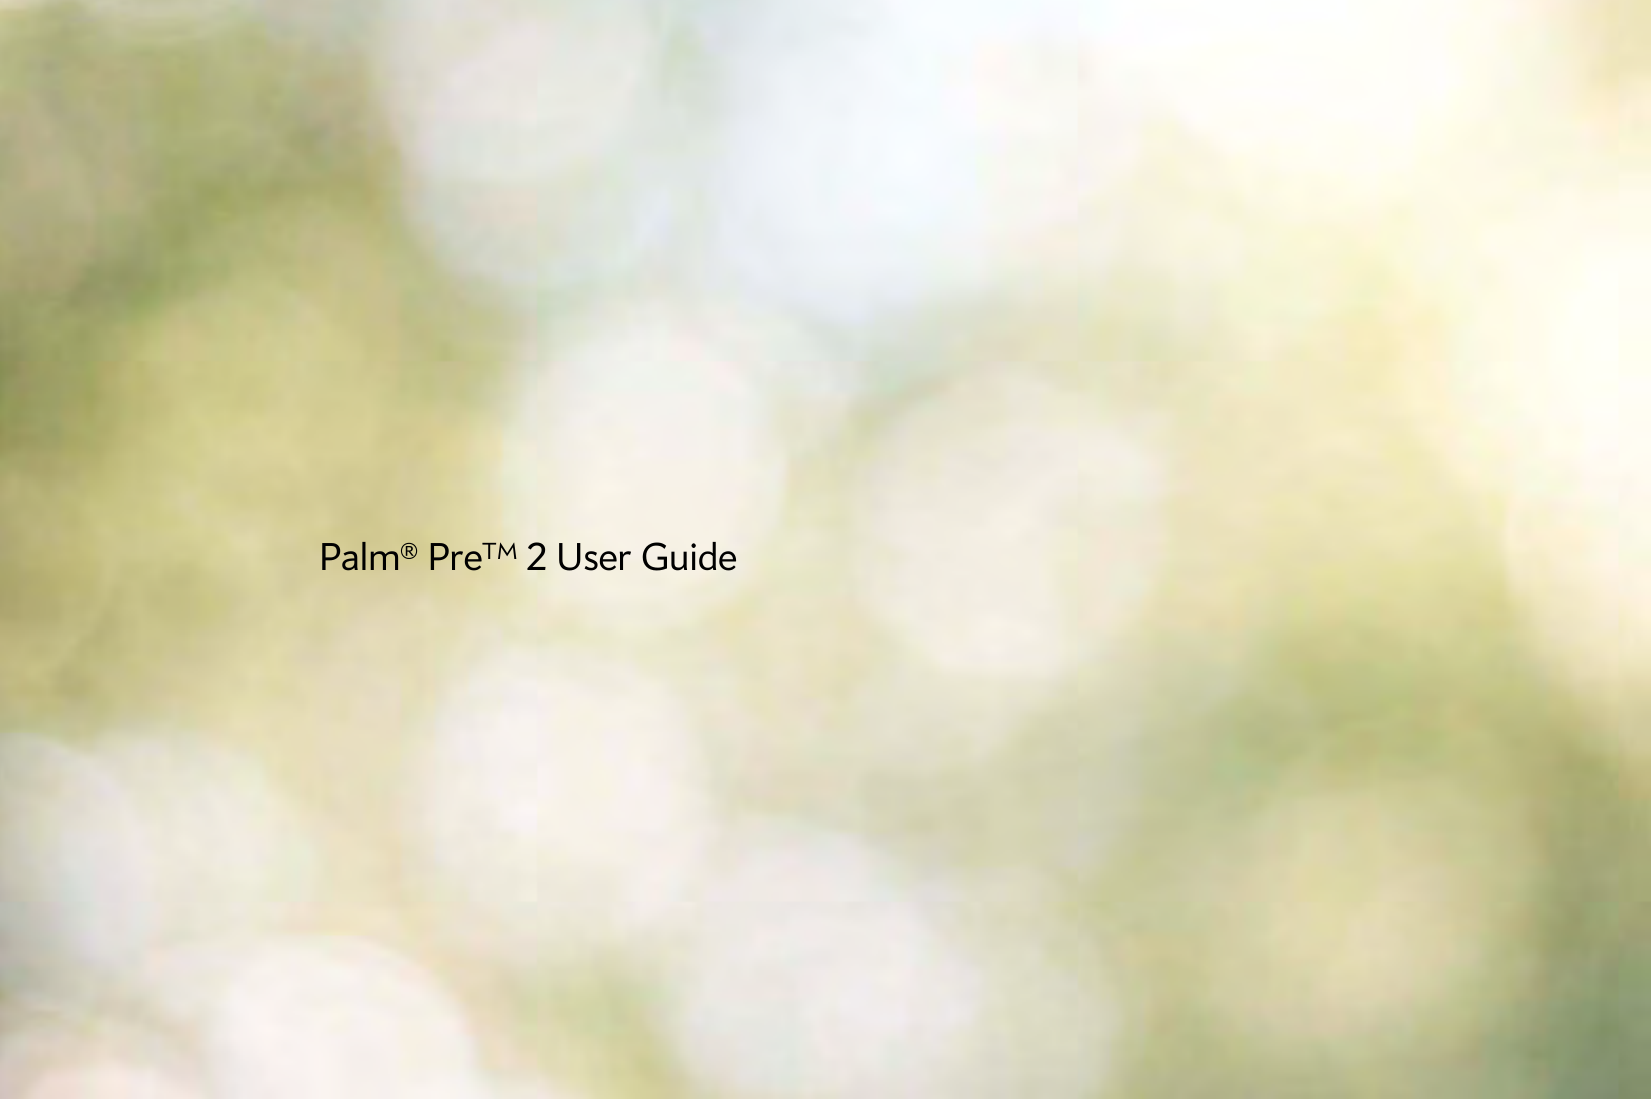 Palm® PreTM 2 User Guide